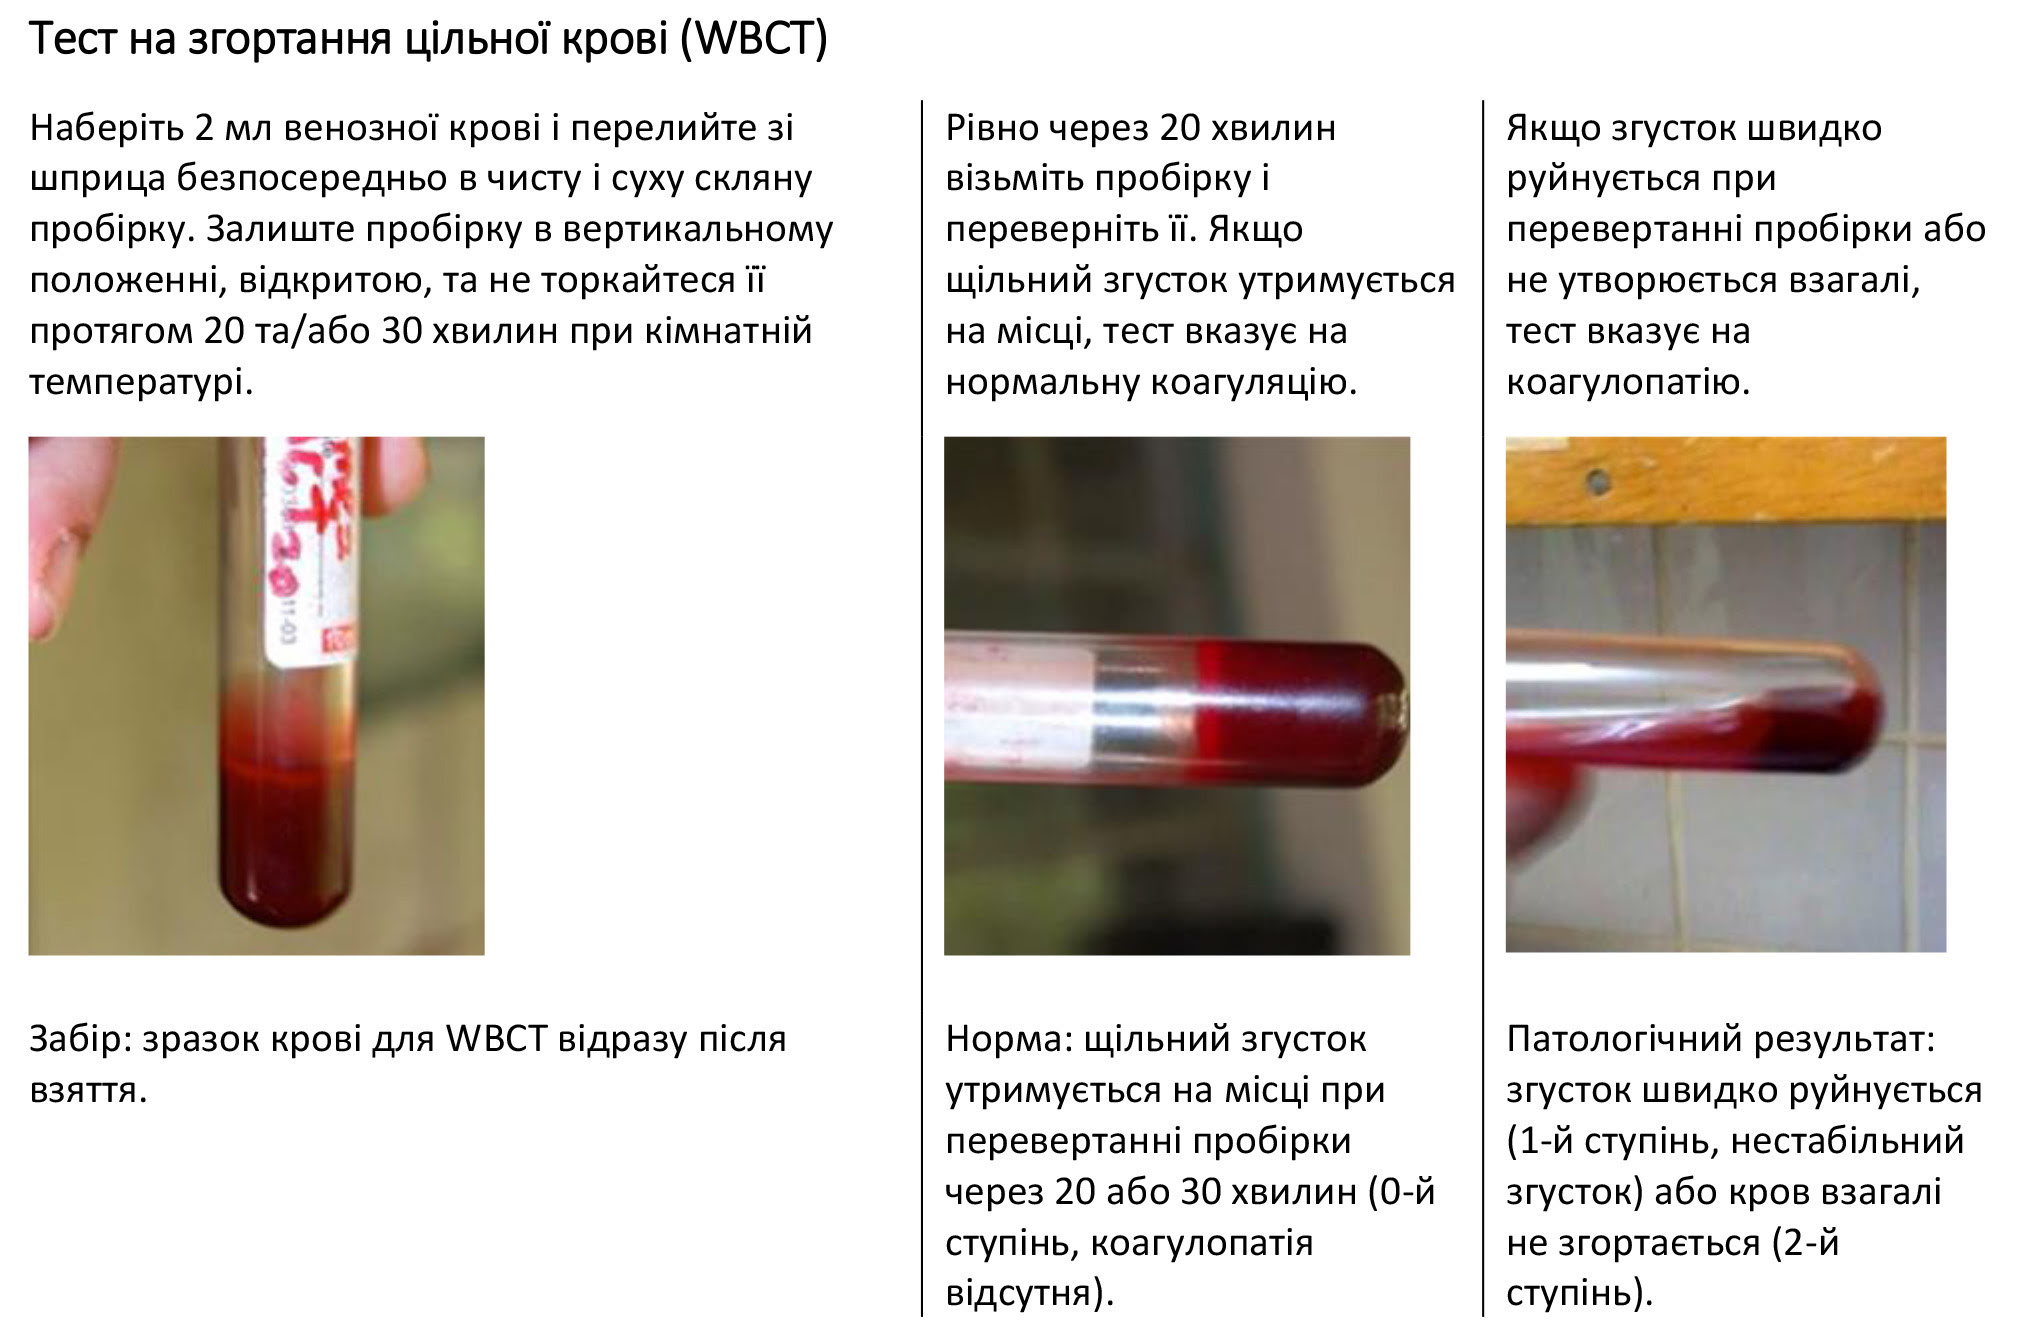 Тест на згортання цільної крові (WBCT)